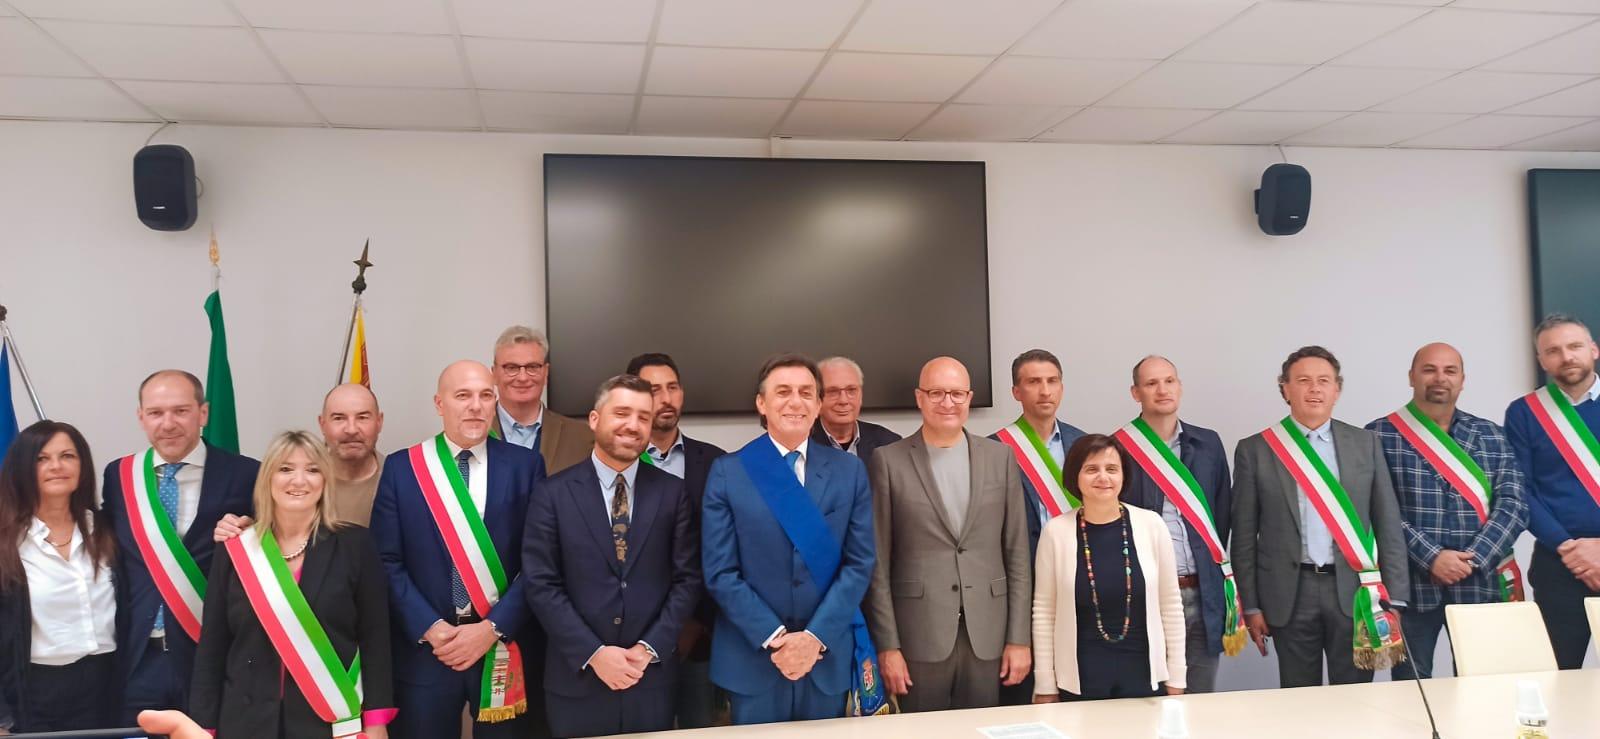 Foto copertina, presidente della Provincia con i 13 sindaci, consigliere Schierato e vice presidente Gottardo